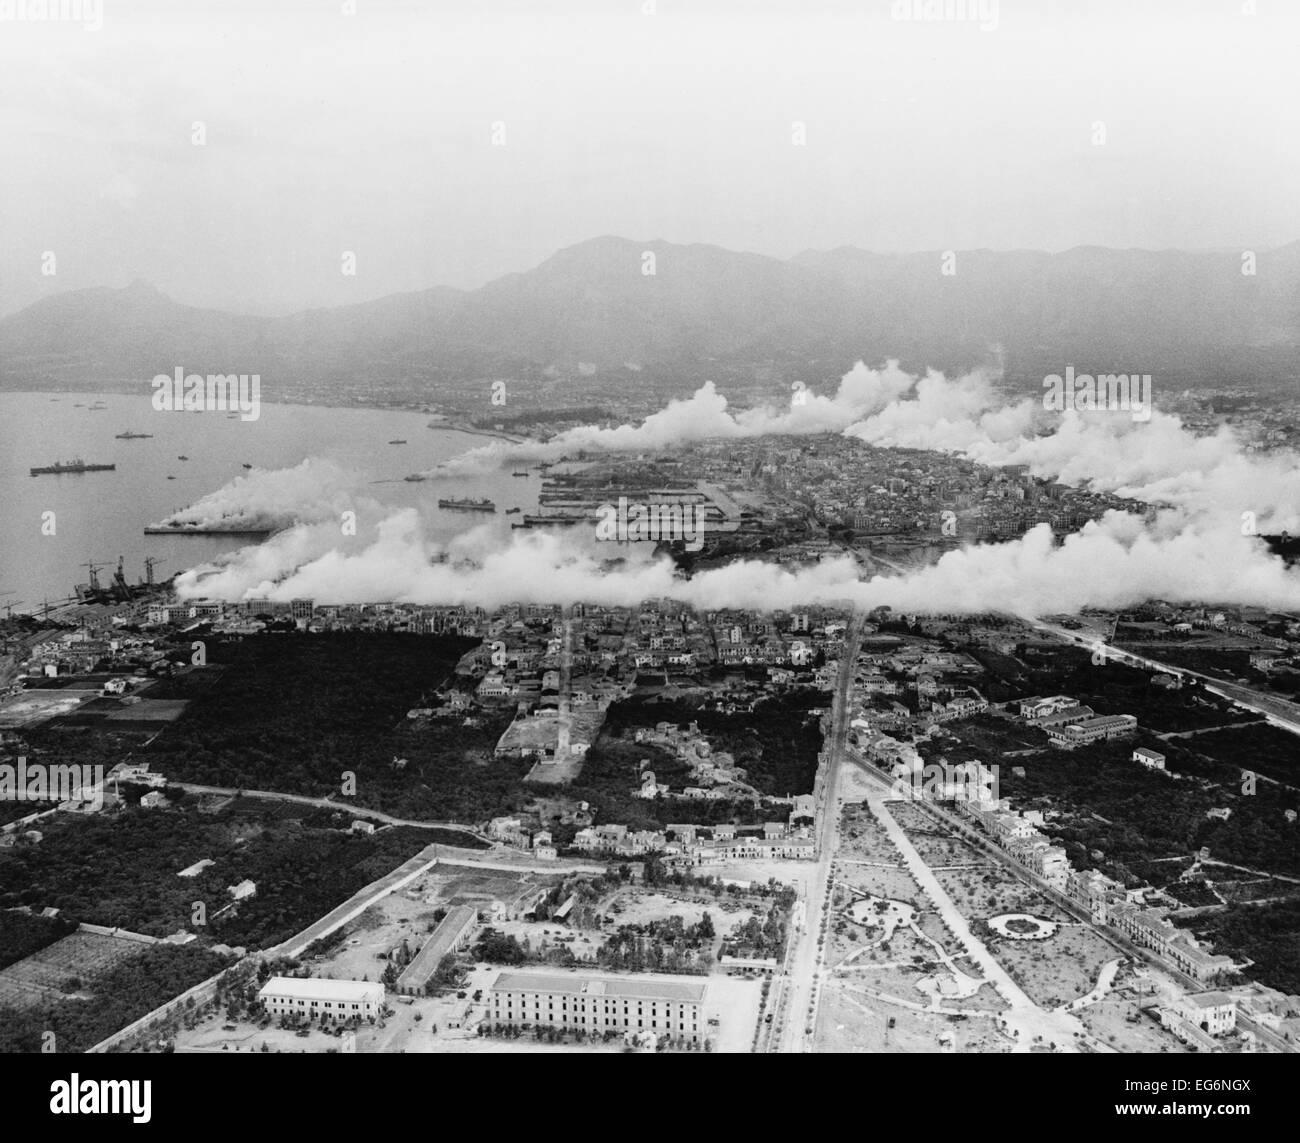 Chemische Kriegsführung Zweig der US-Armee bedeckt Palermo mit einer schützenden Deckmantel. 27. September 1943. Dem 2. Weltkrieg. Stockfoto